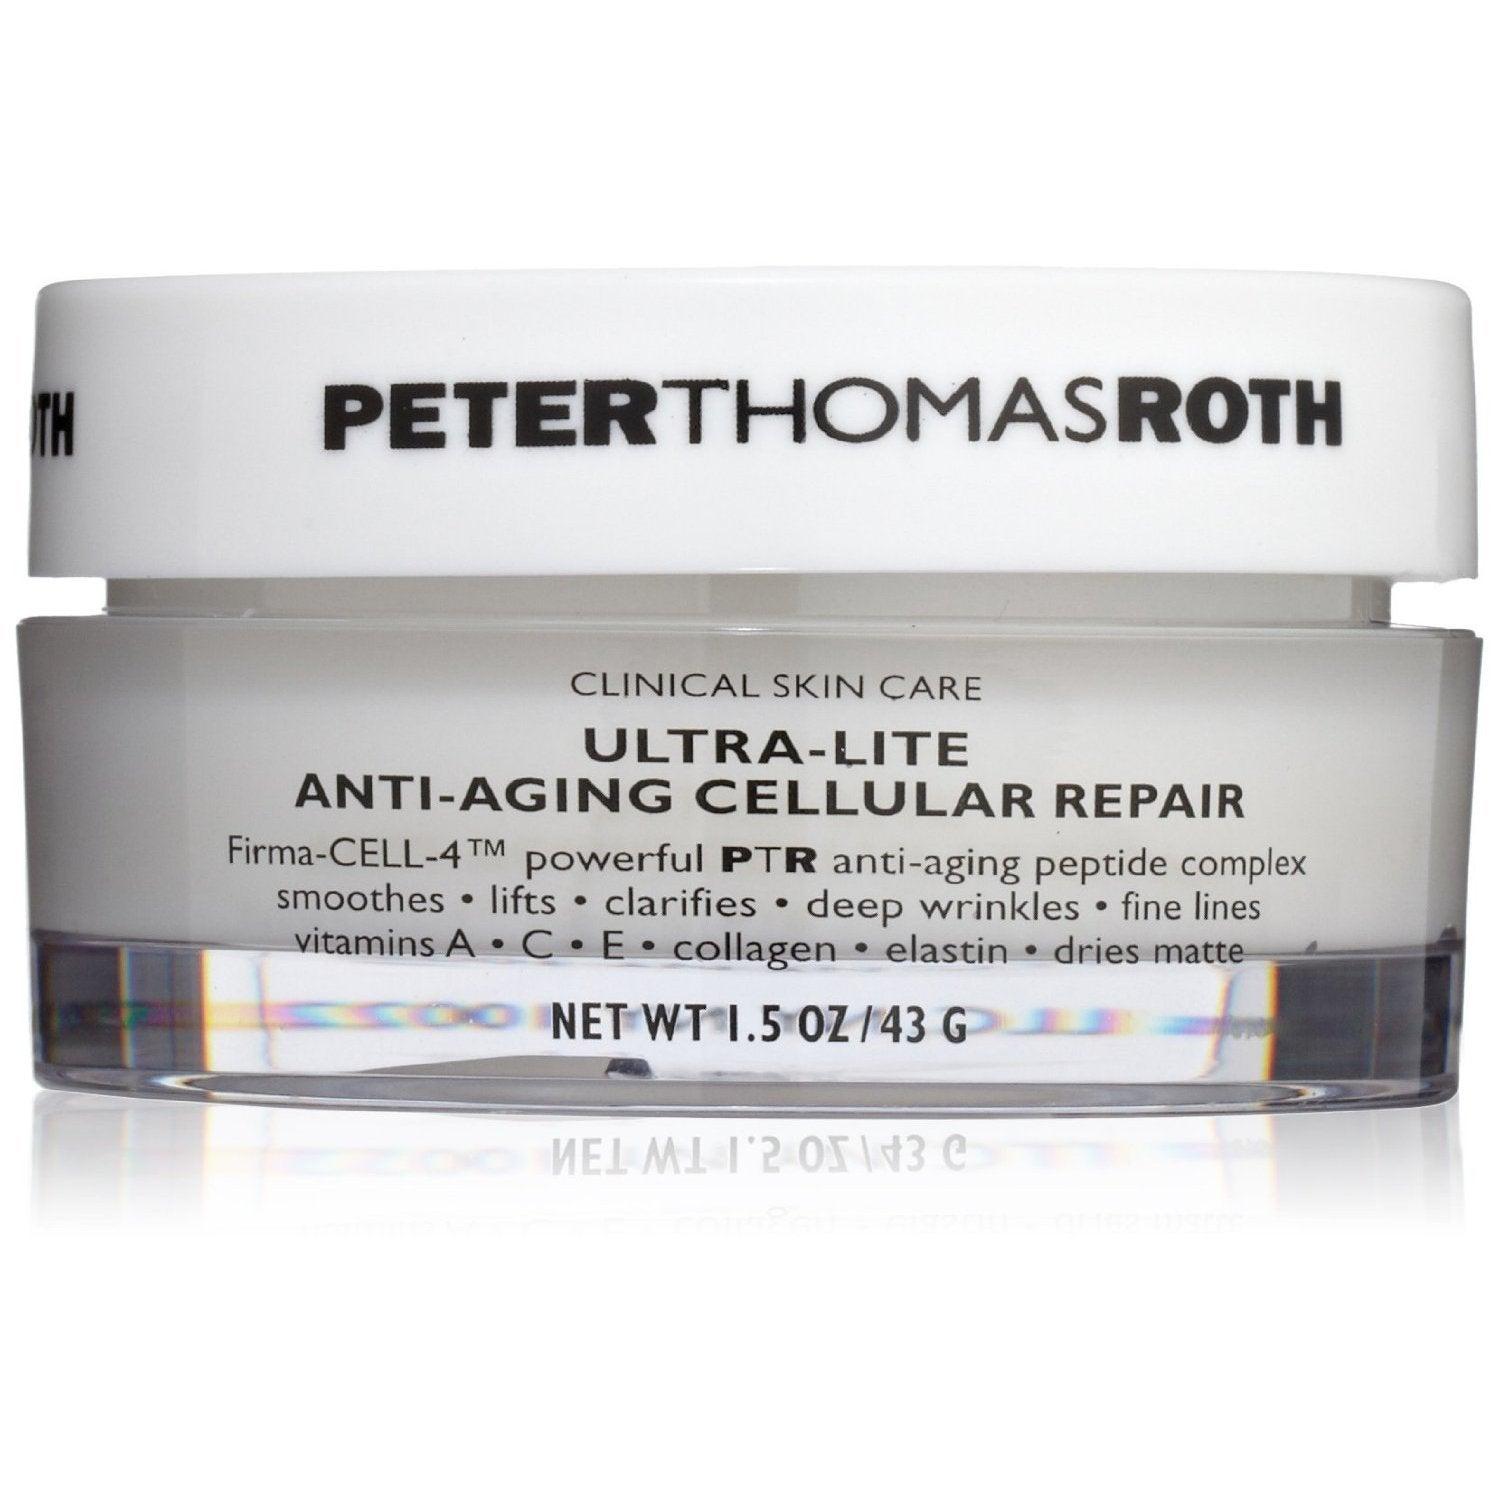 Ultra-Lite Anti-Aging Cellular Repair